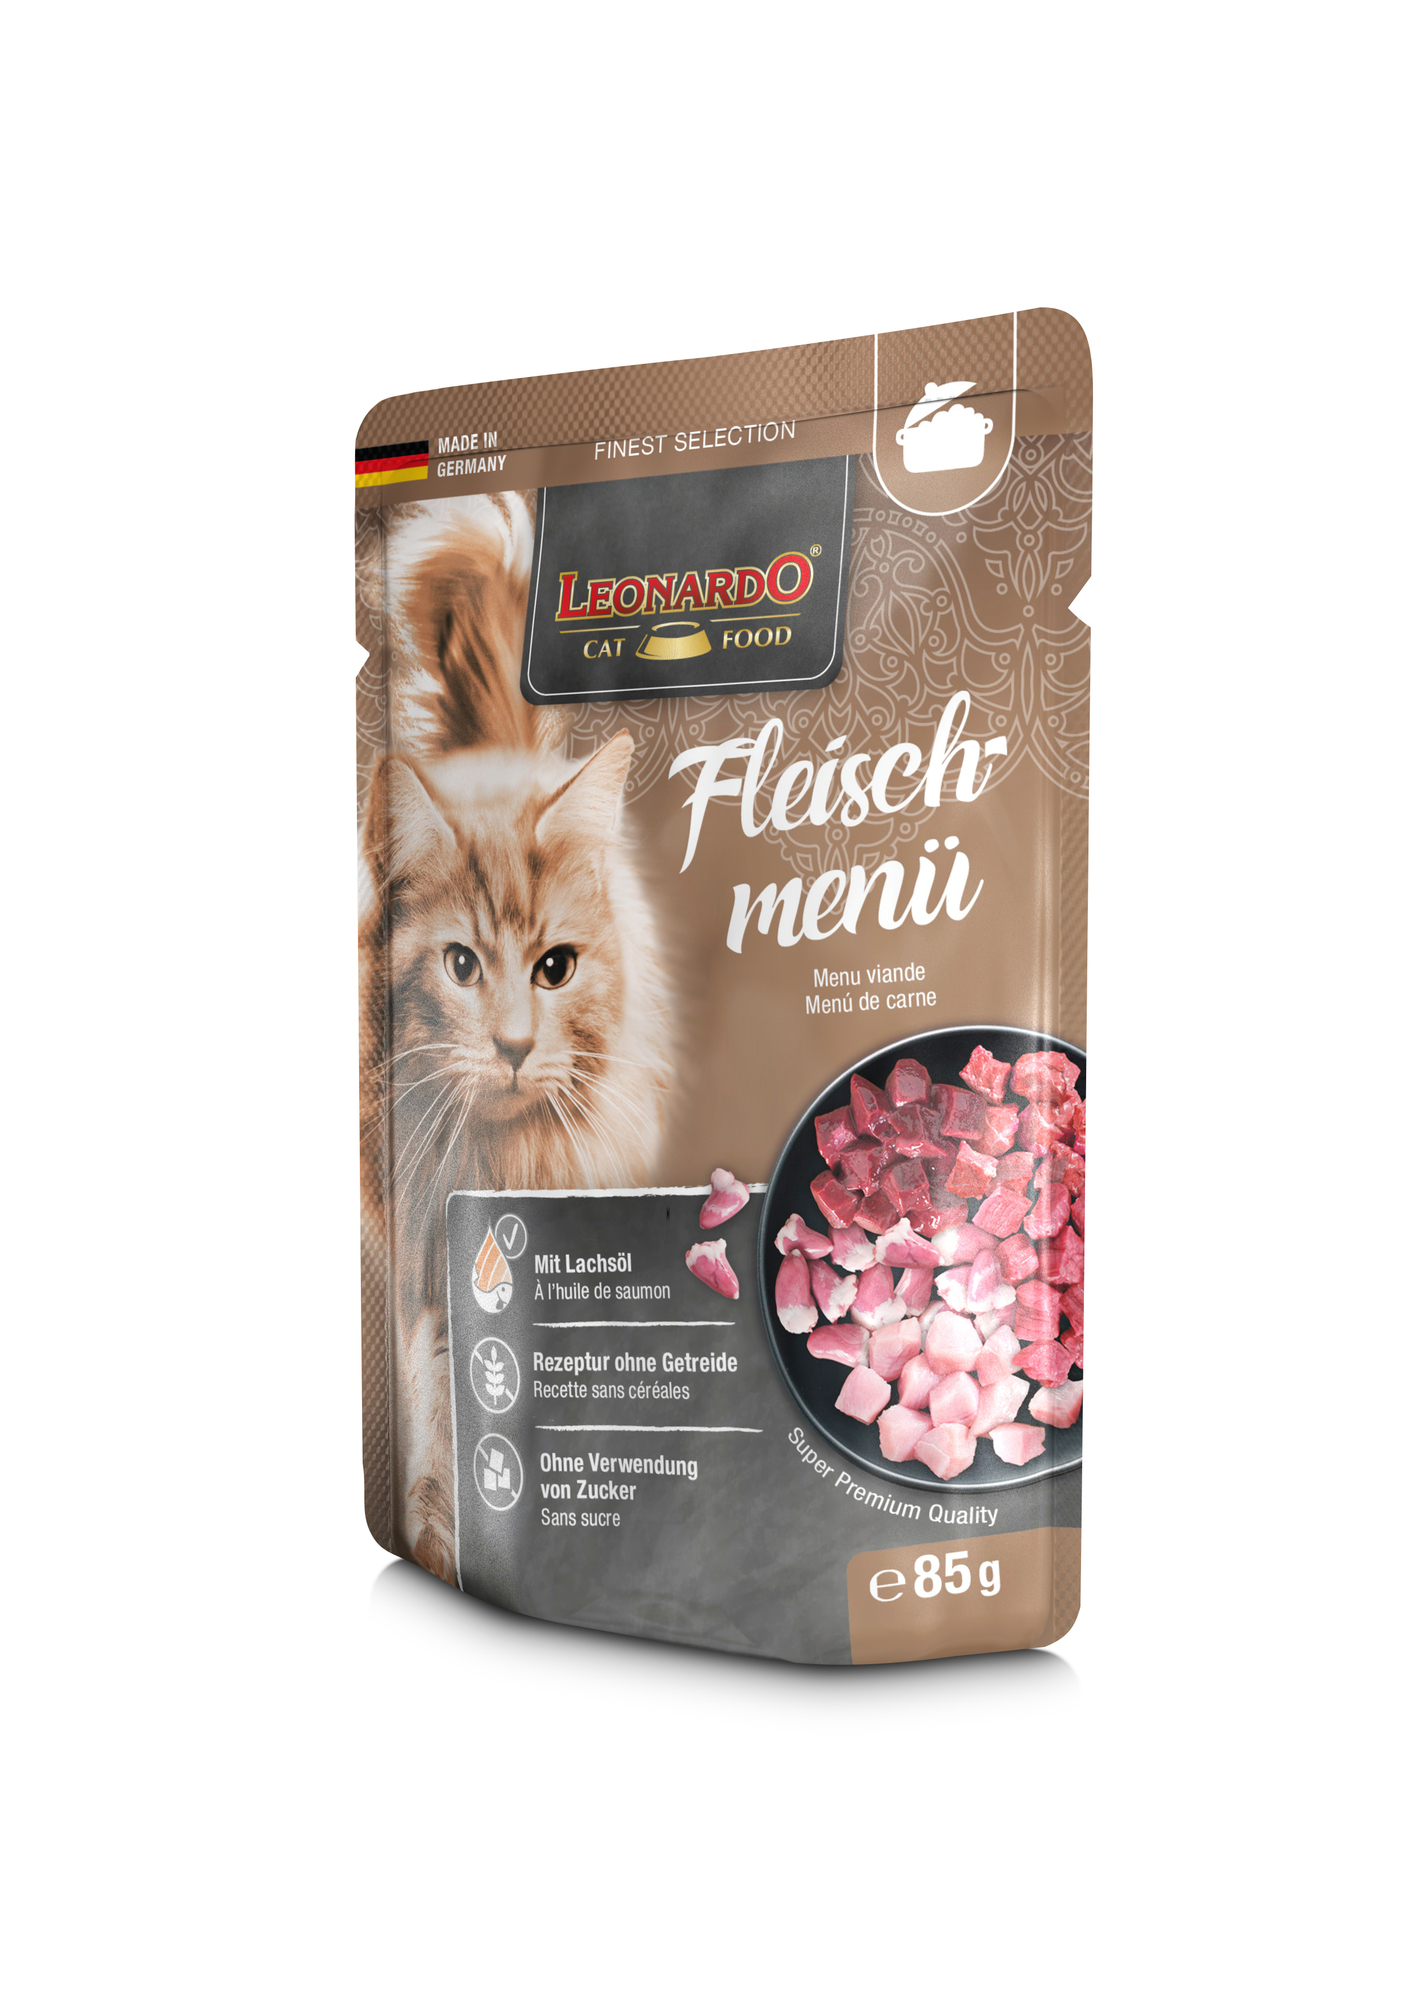 Leonardo Finest Selection maaltijdzakjes voor volwassen katten - 3 smaken